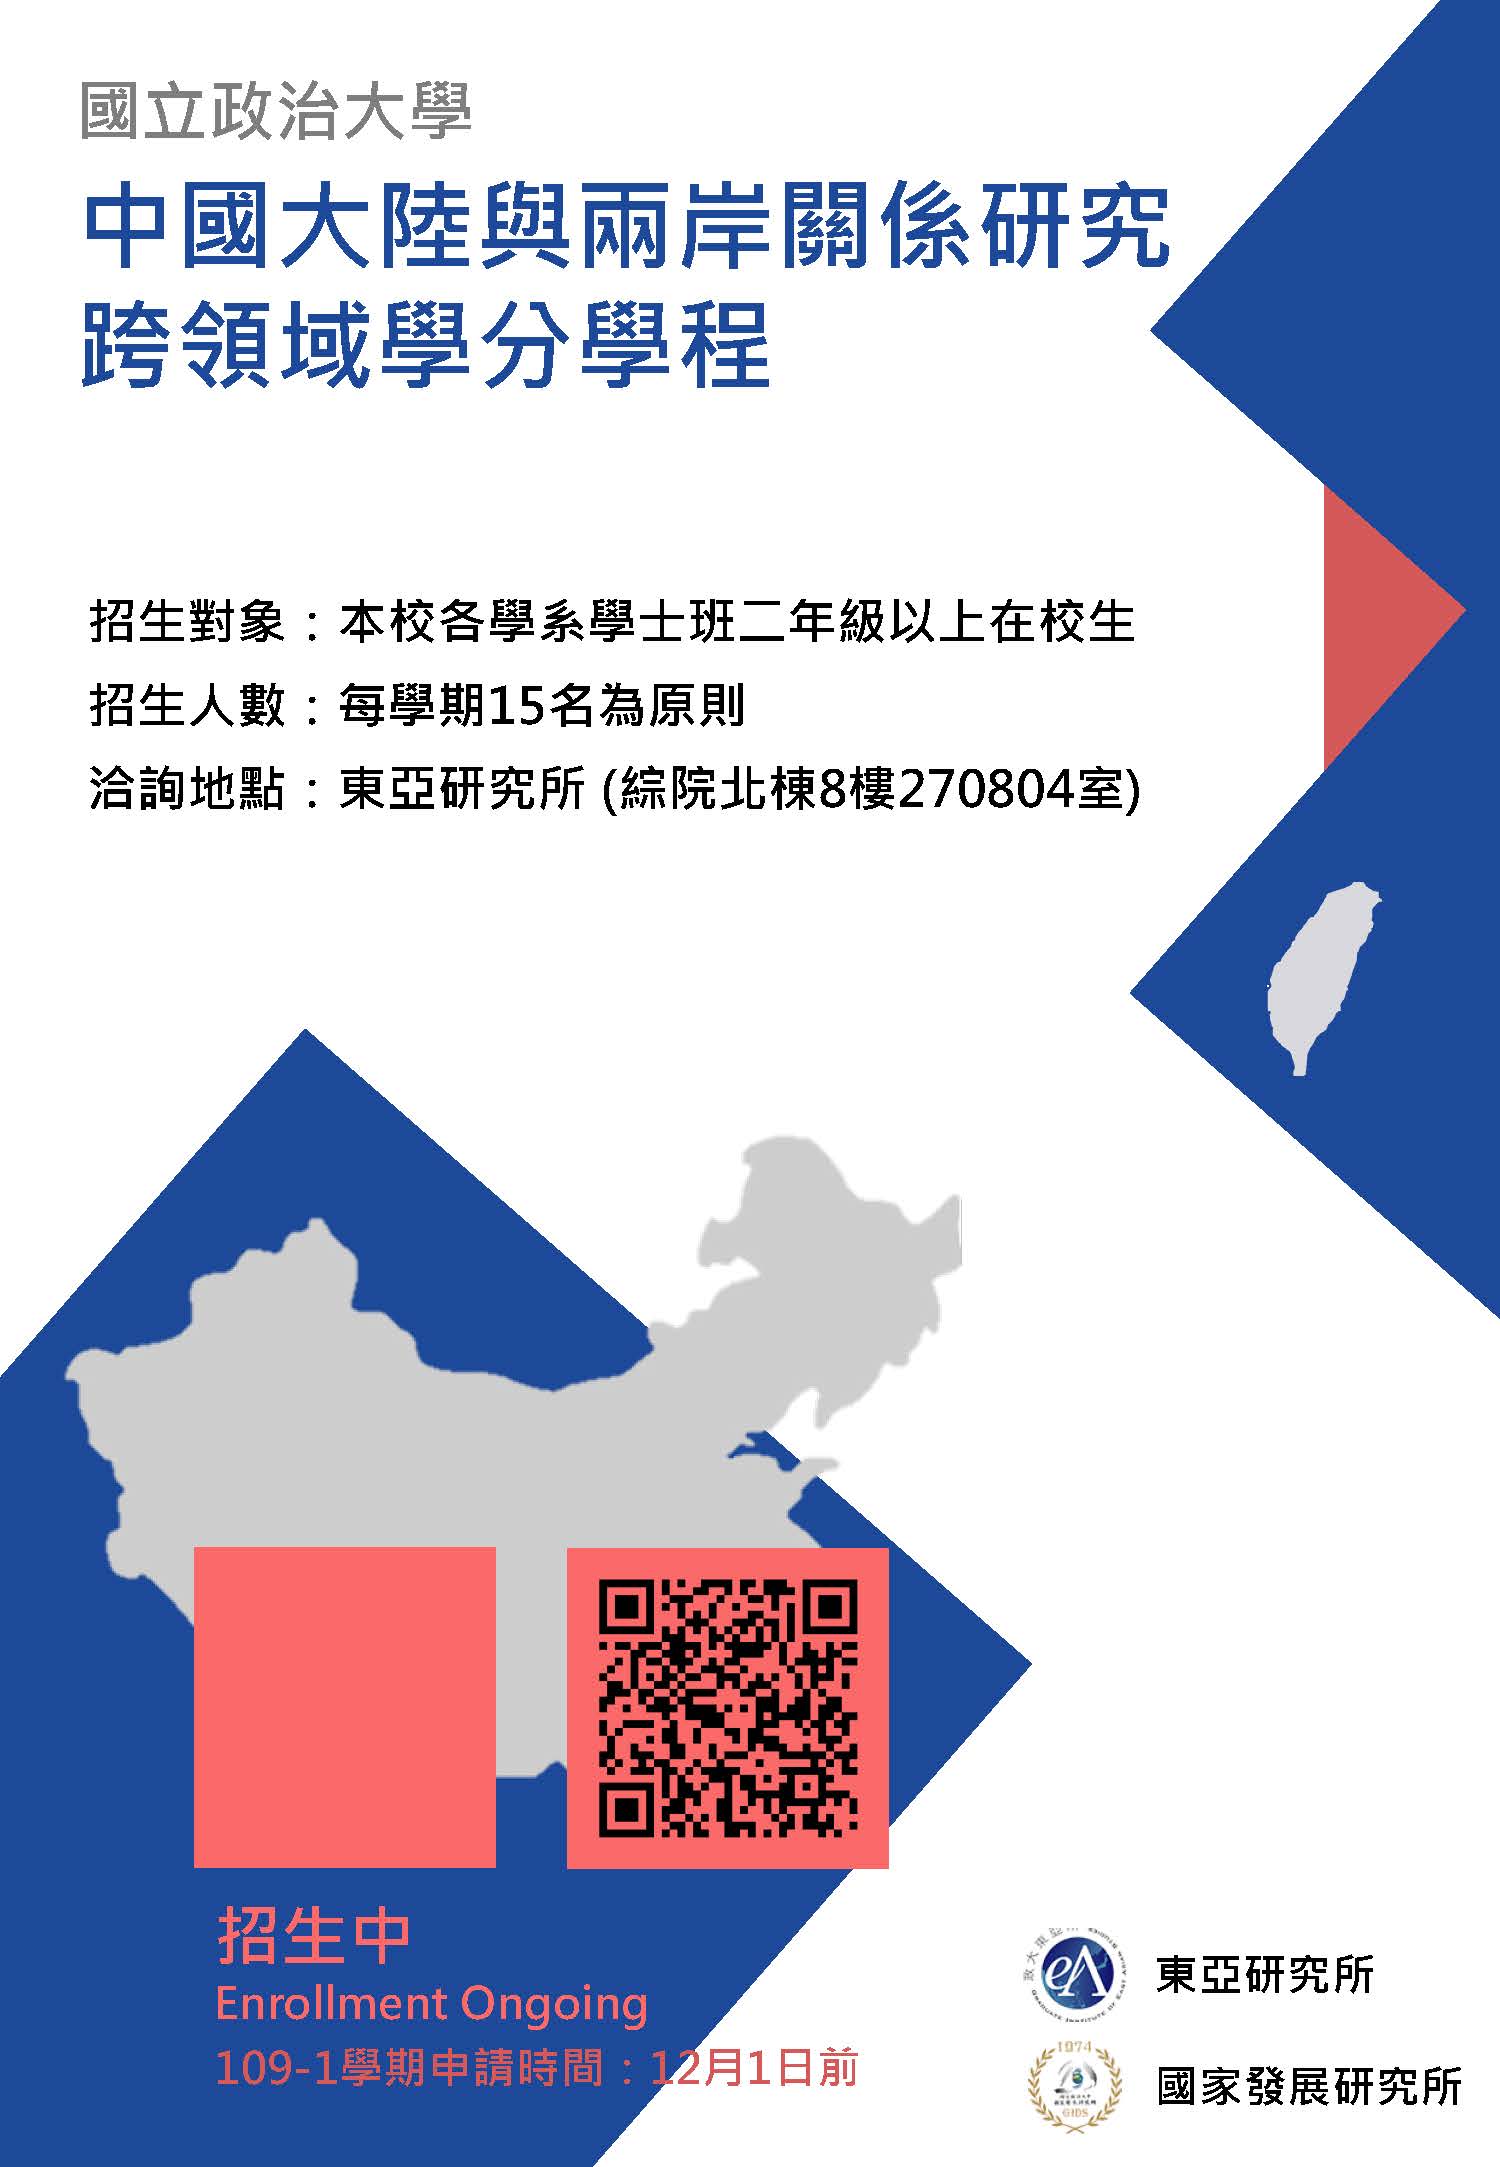 「中國大陸與兩岸關係研究跨領域學分學程」申請公告